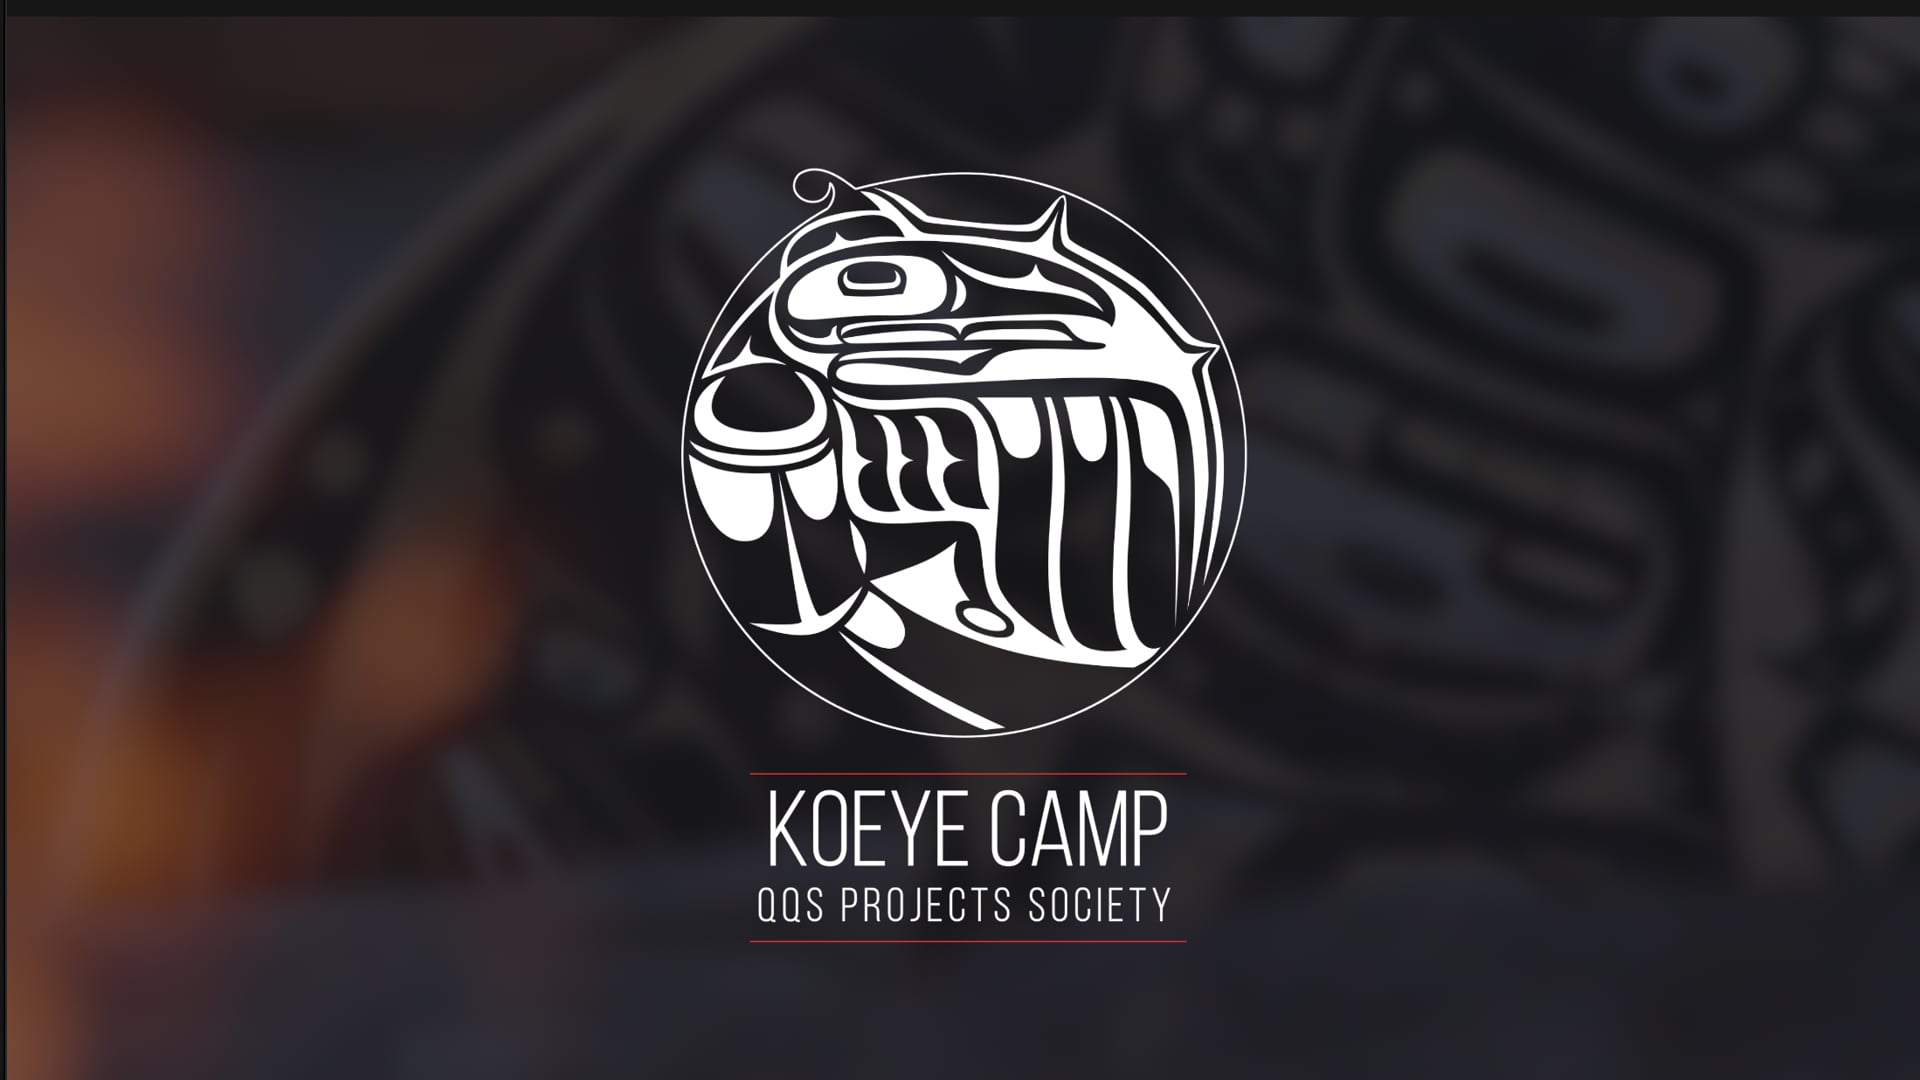 Koeye Camp